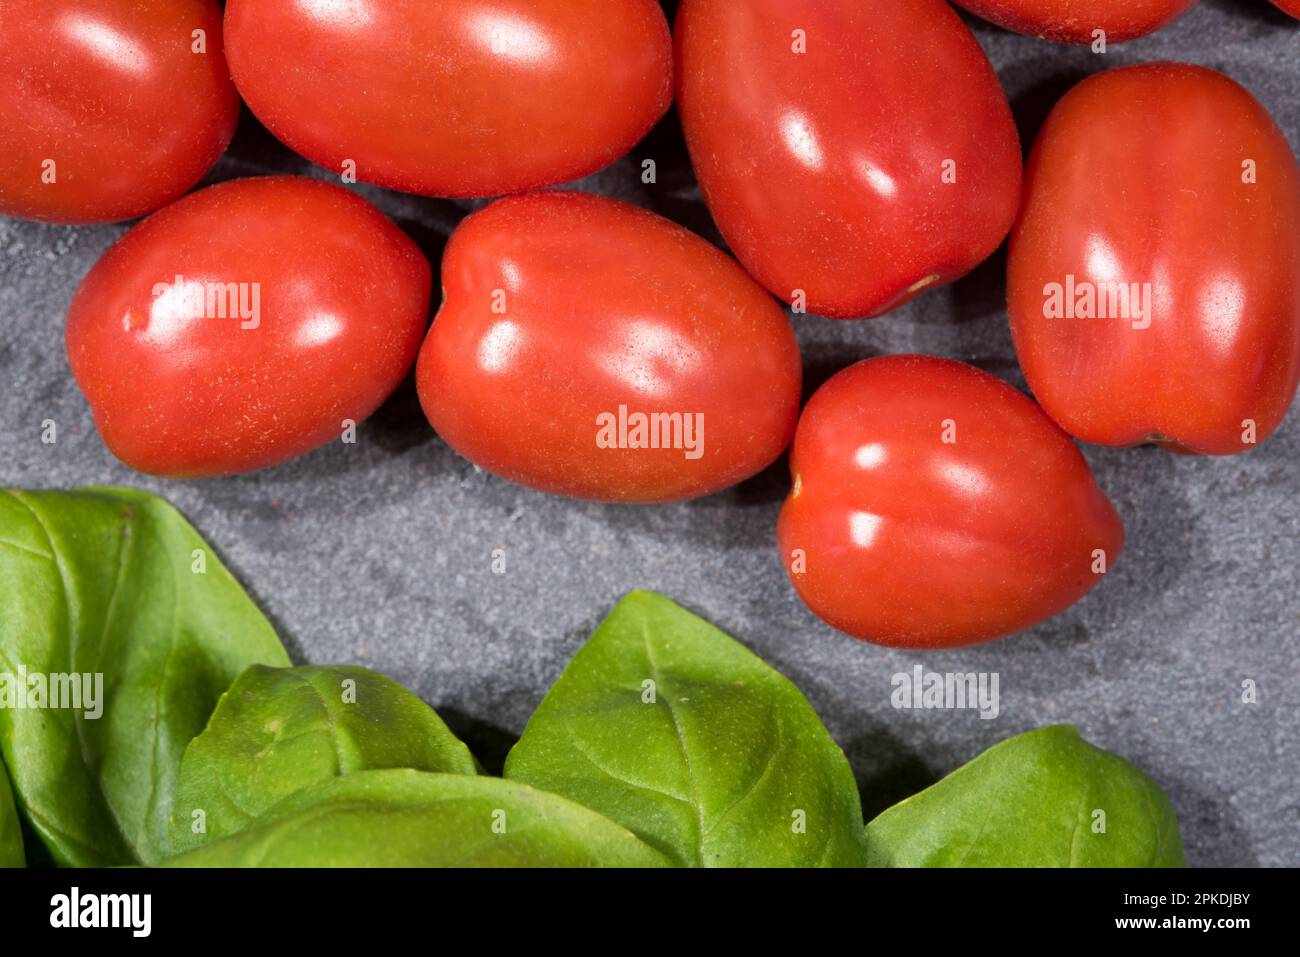 Alcuni bei pomodori con foglie di basilico Stockfoto